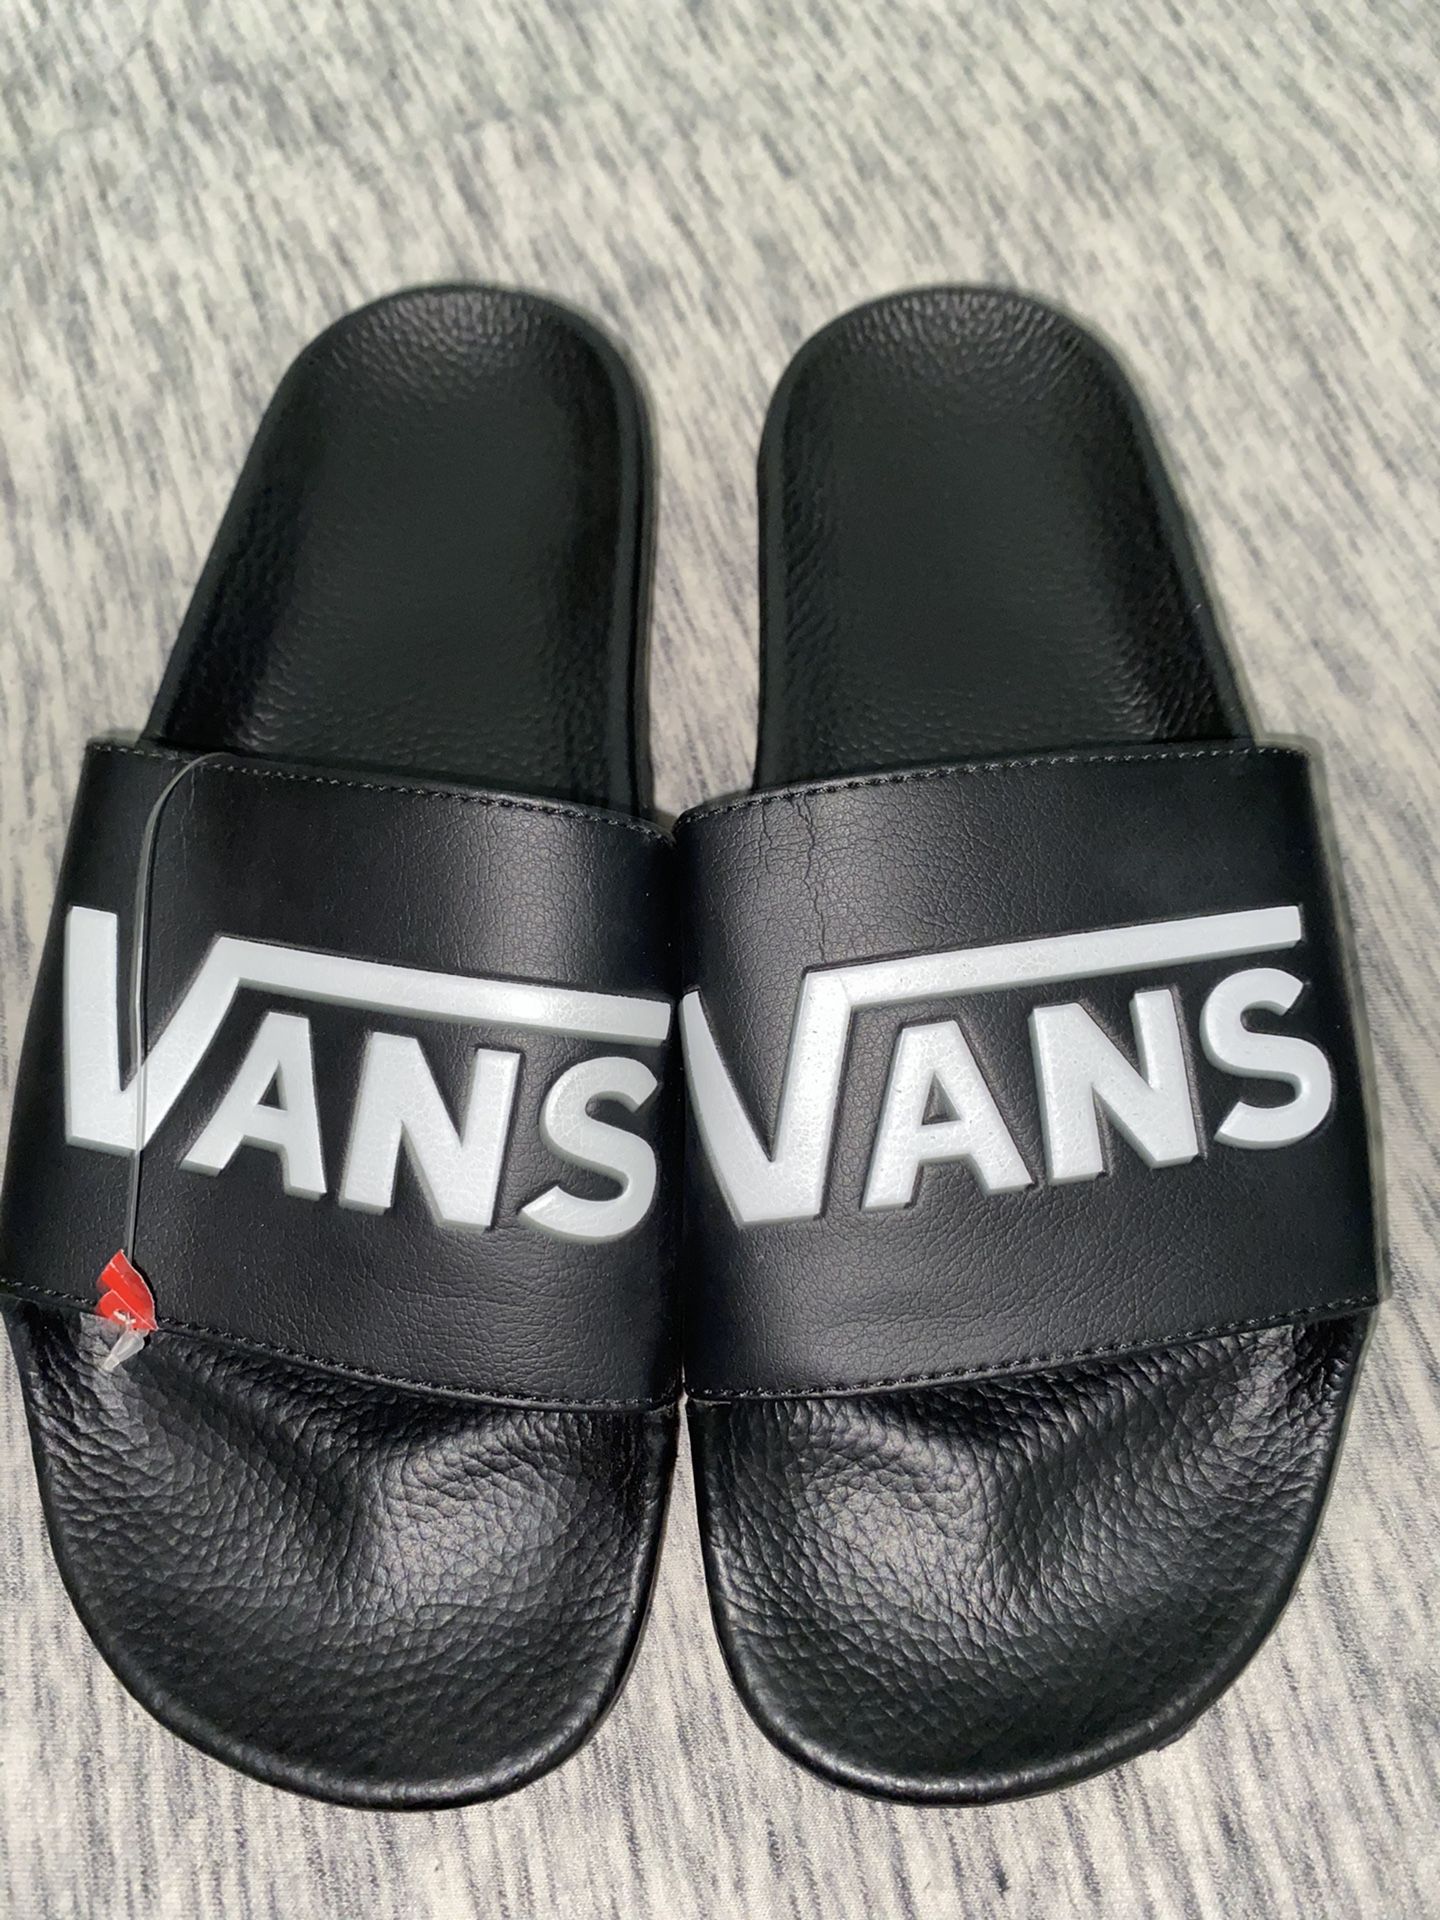 Vans Sandals